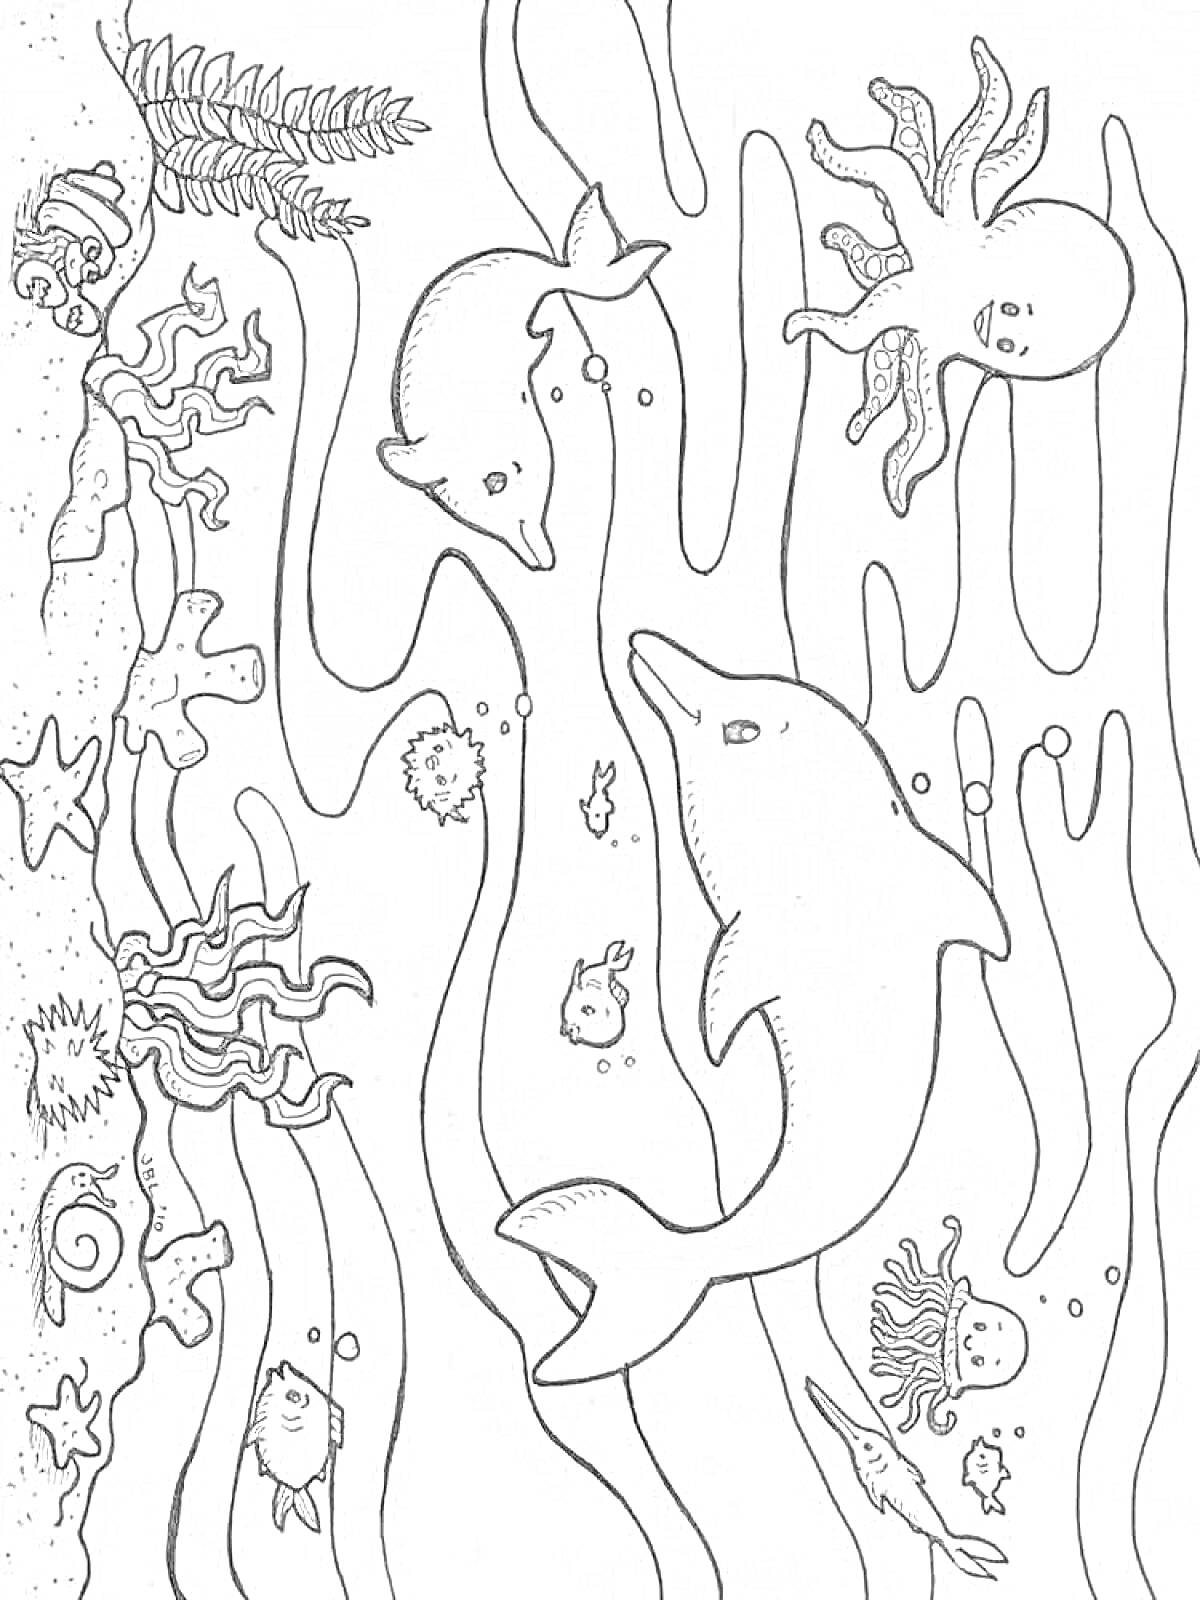 Раскраска Евсейка в подводном царстве с дельфинами, осьминогами, рыбами, морскими коньками, звездами и водорослями